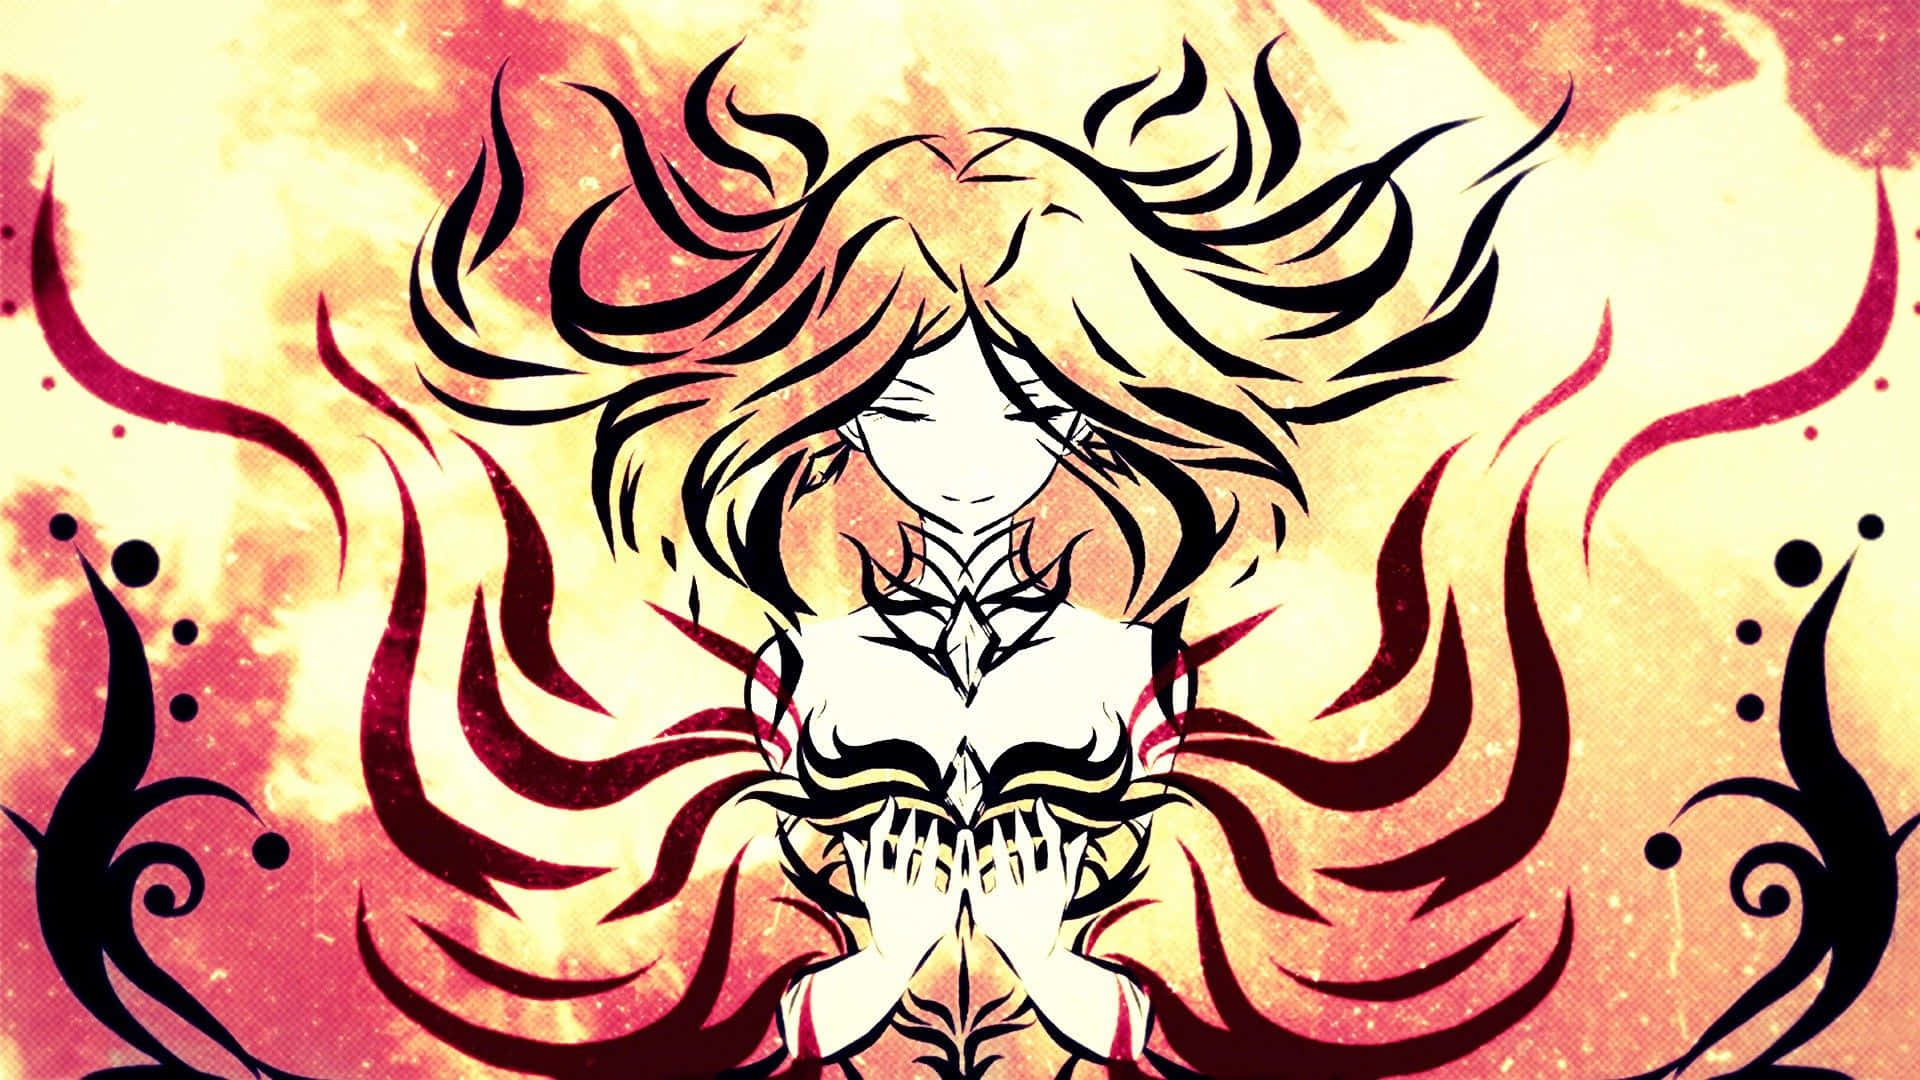 Lina, the Fiery Soul, unleashing her fiery powers in Dota 2 Wallpaper